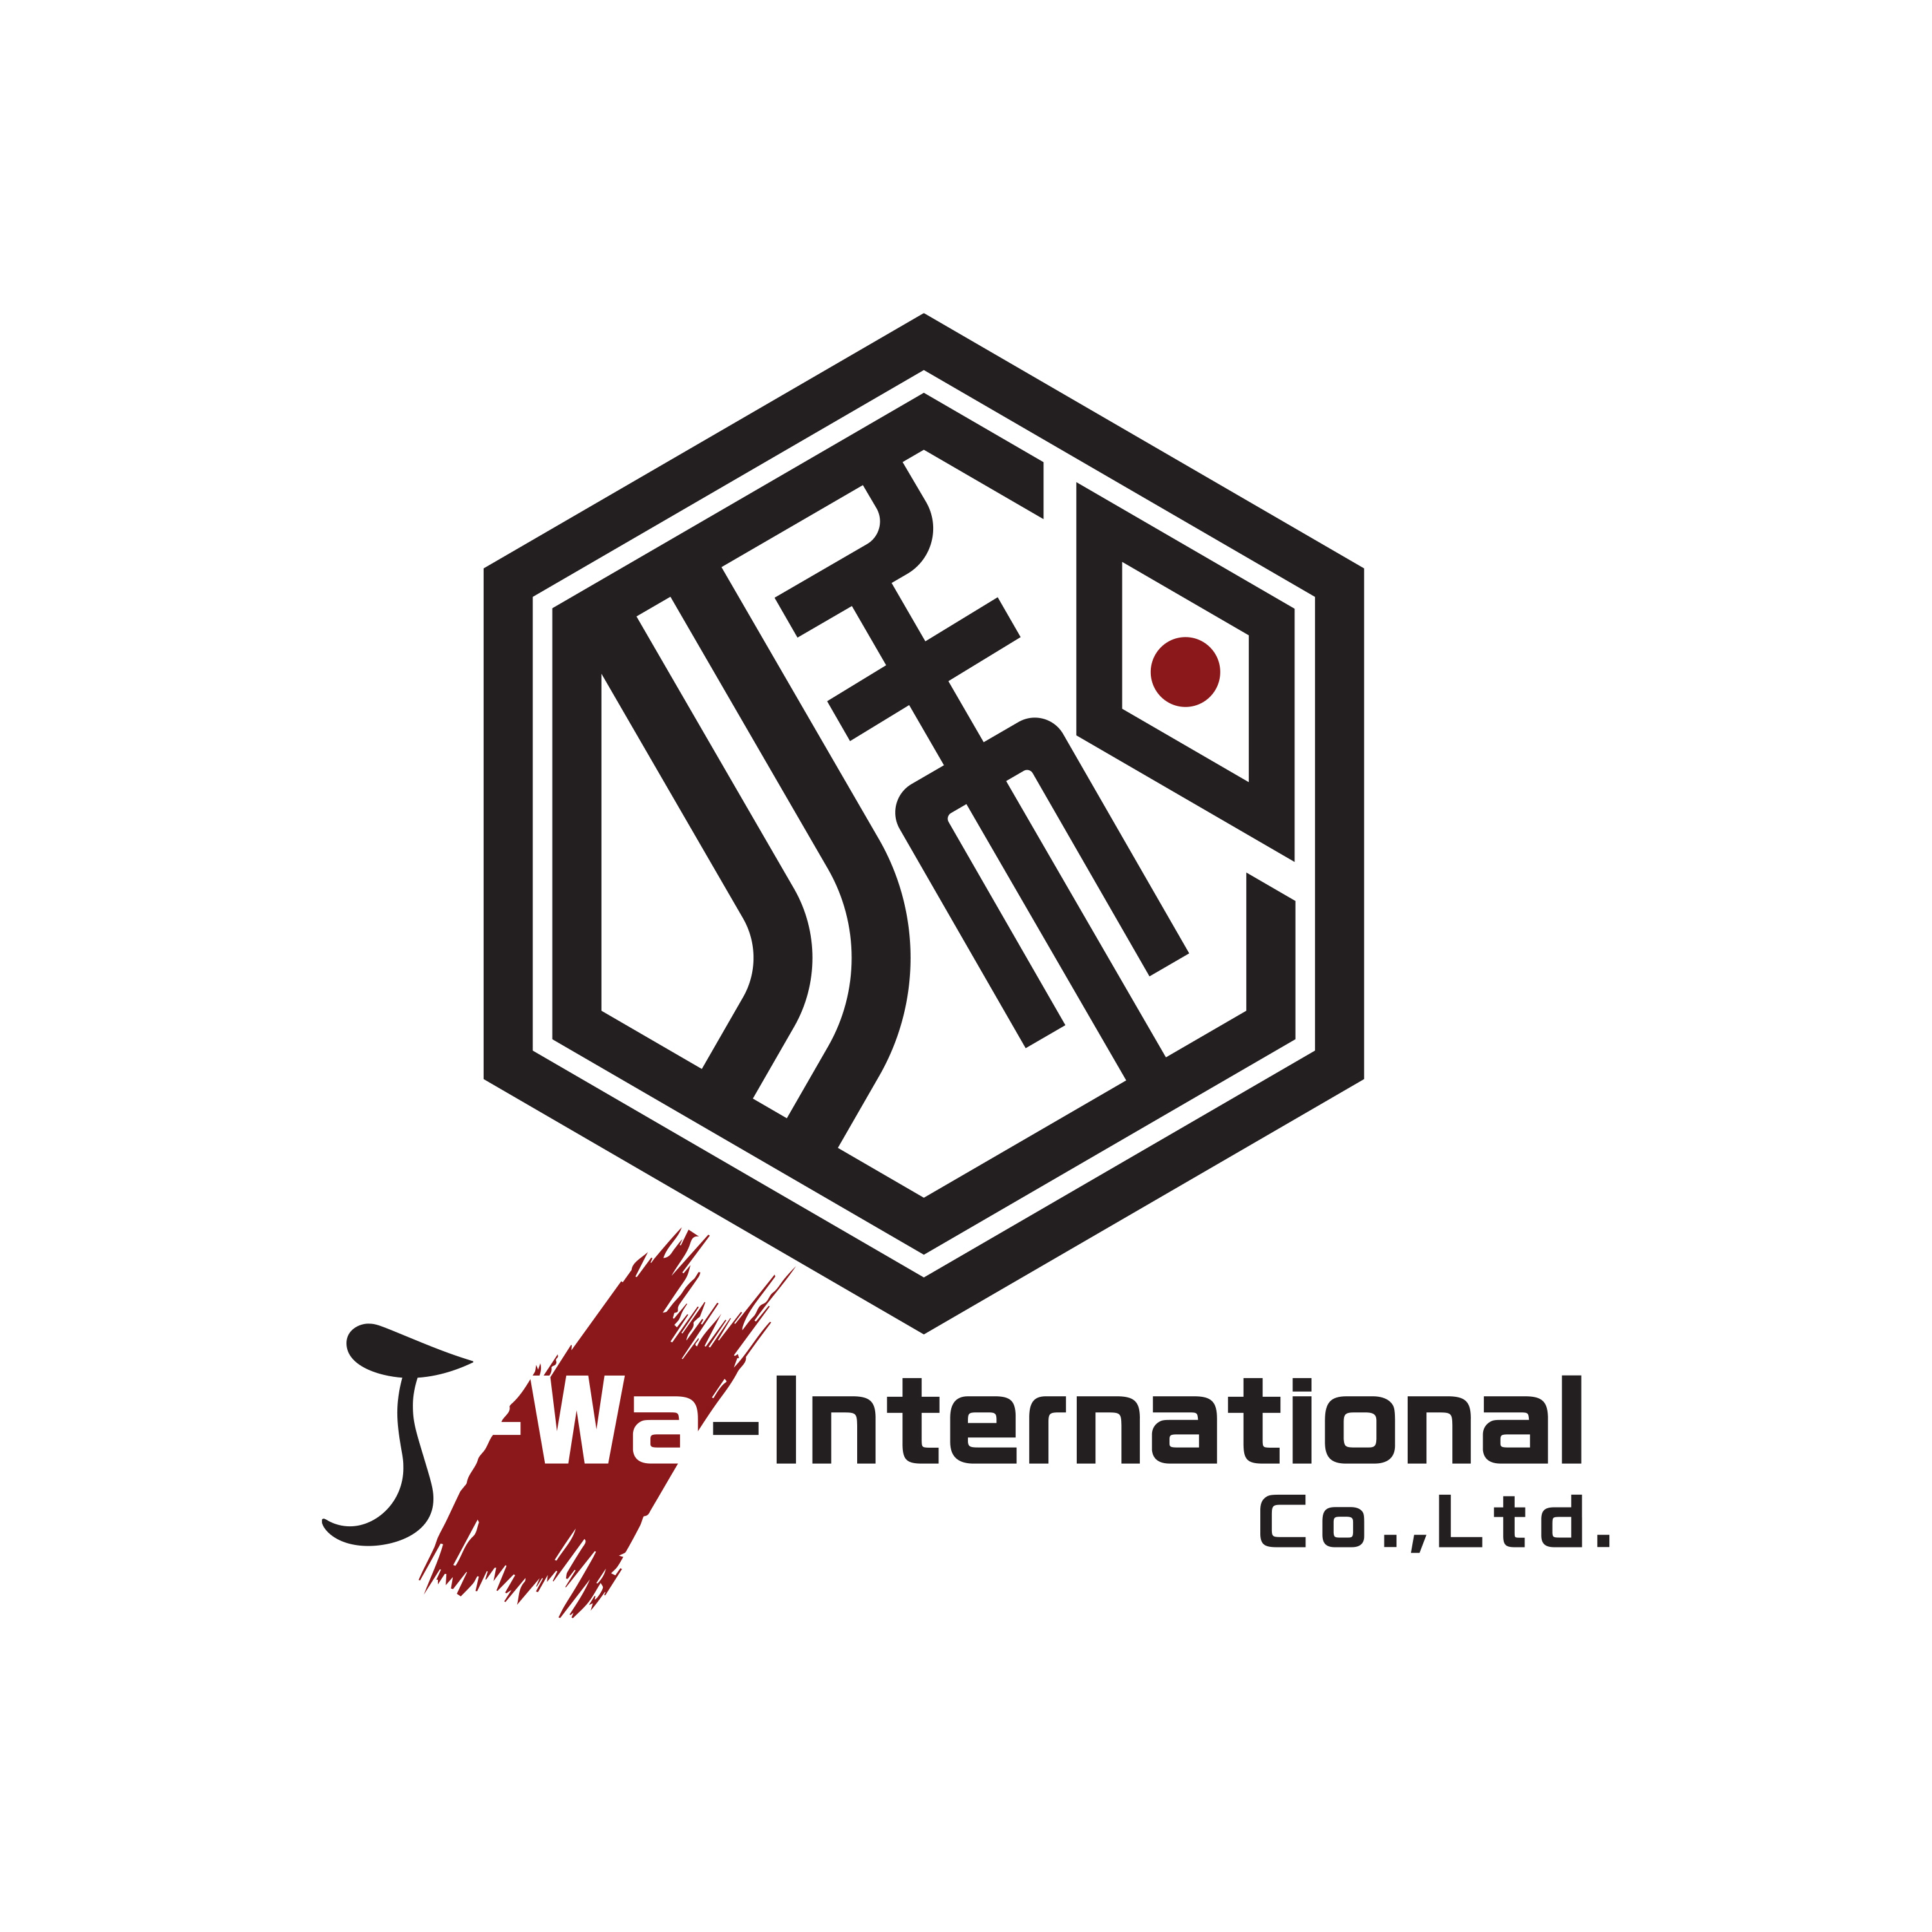 J-Wa-International Co.,Ltd.